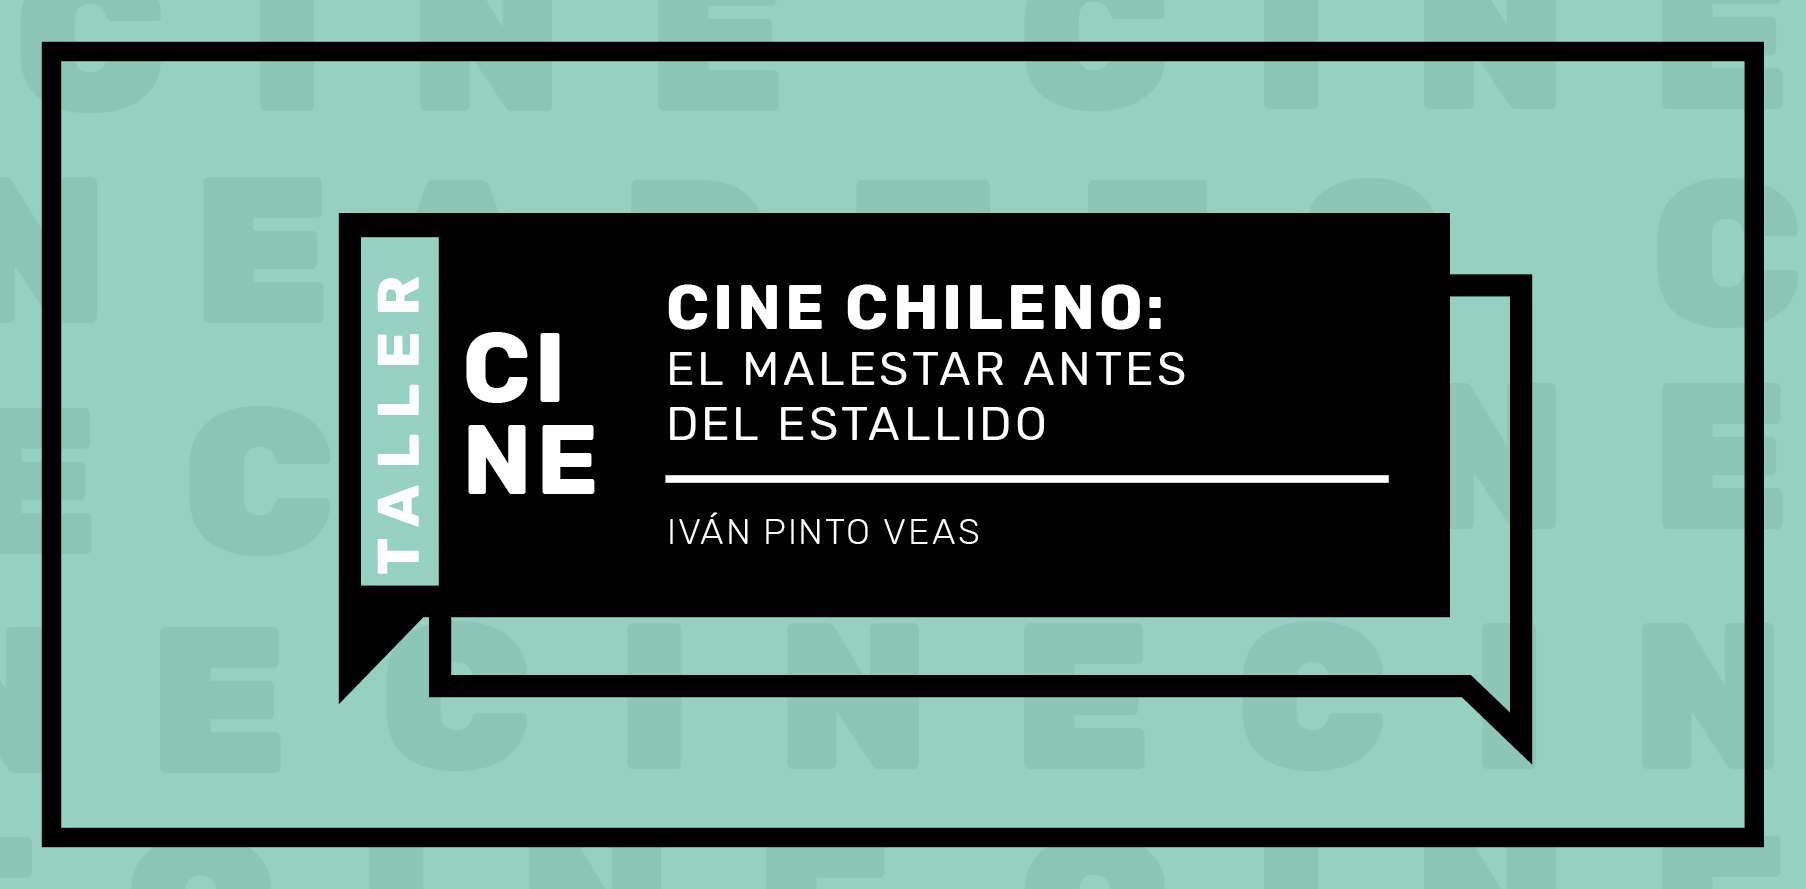 Cine chileno: El malestar antes del estallido